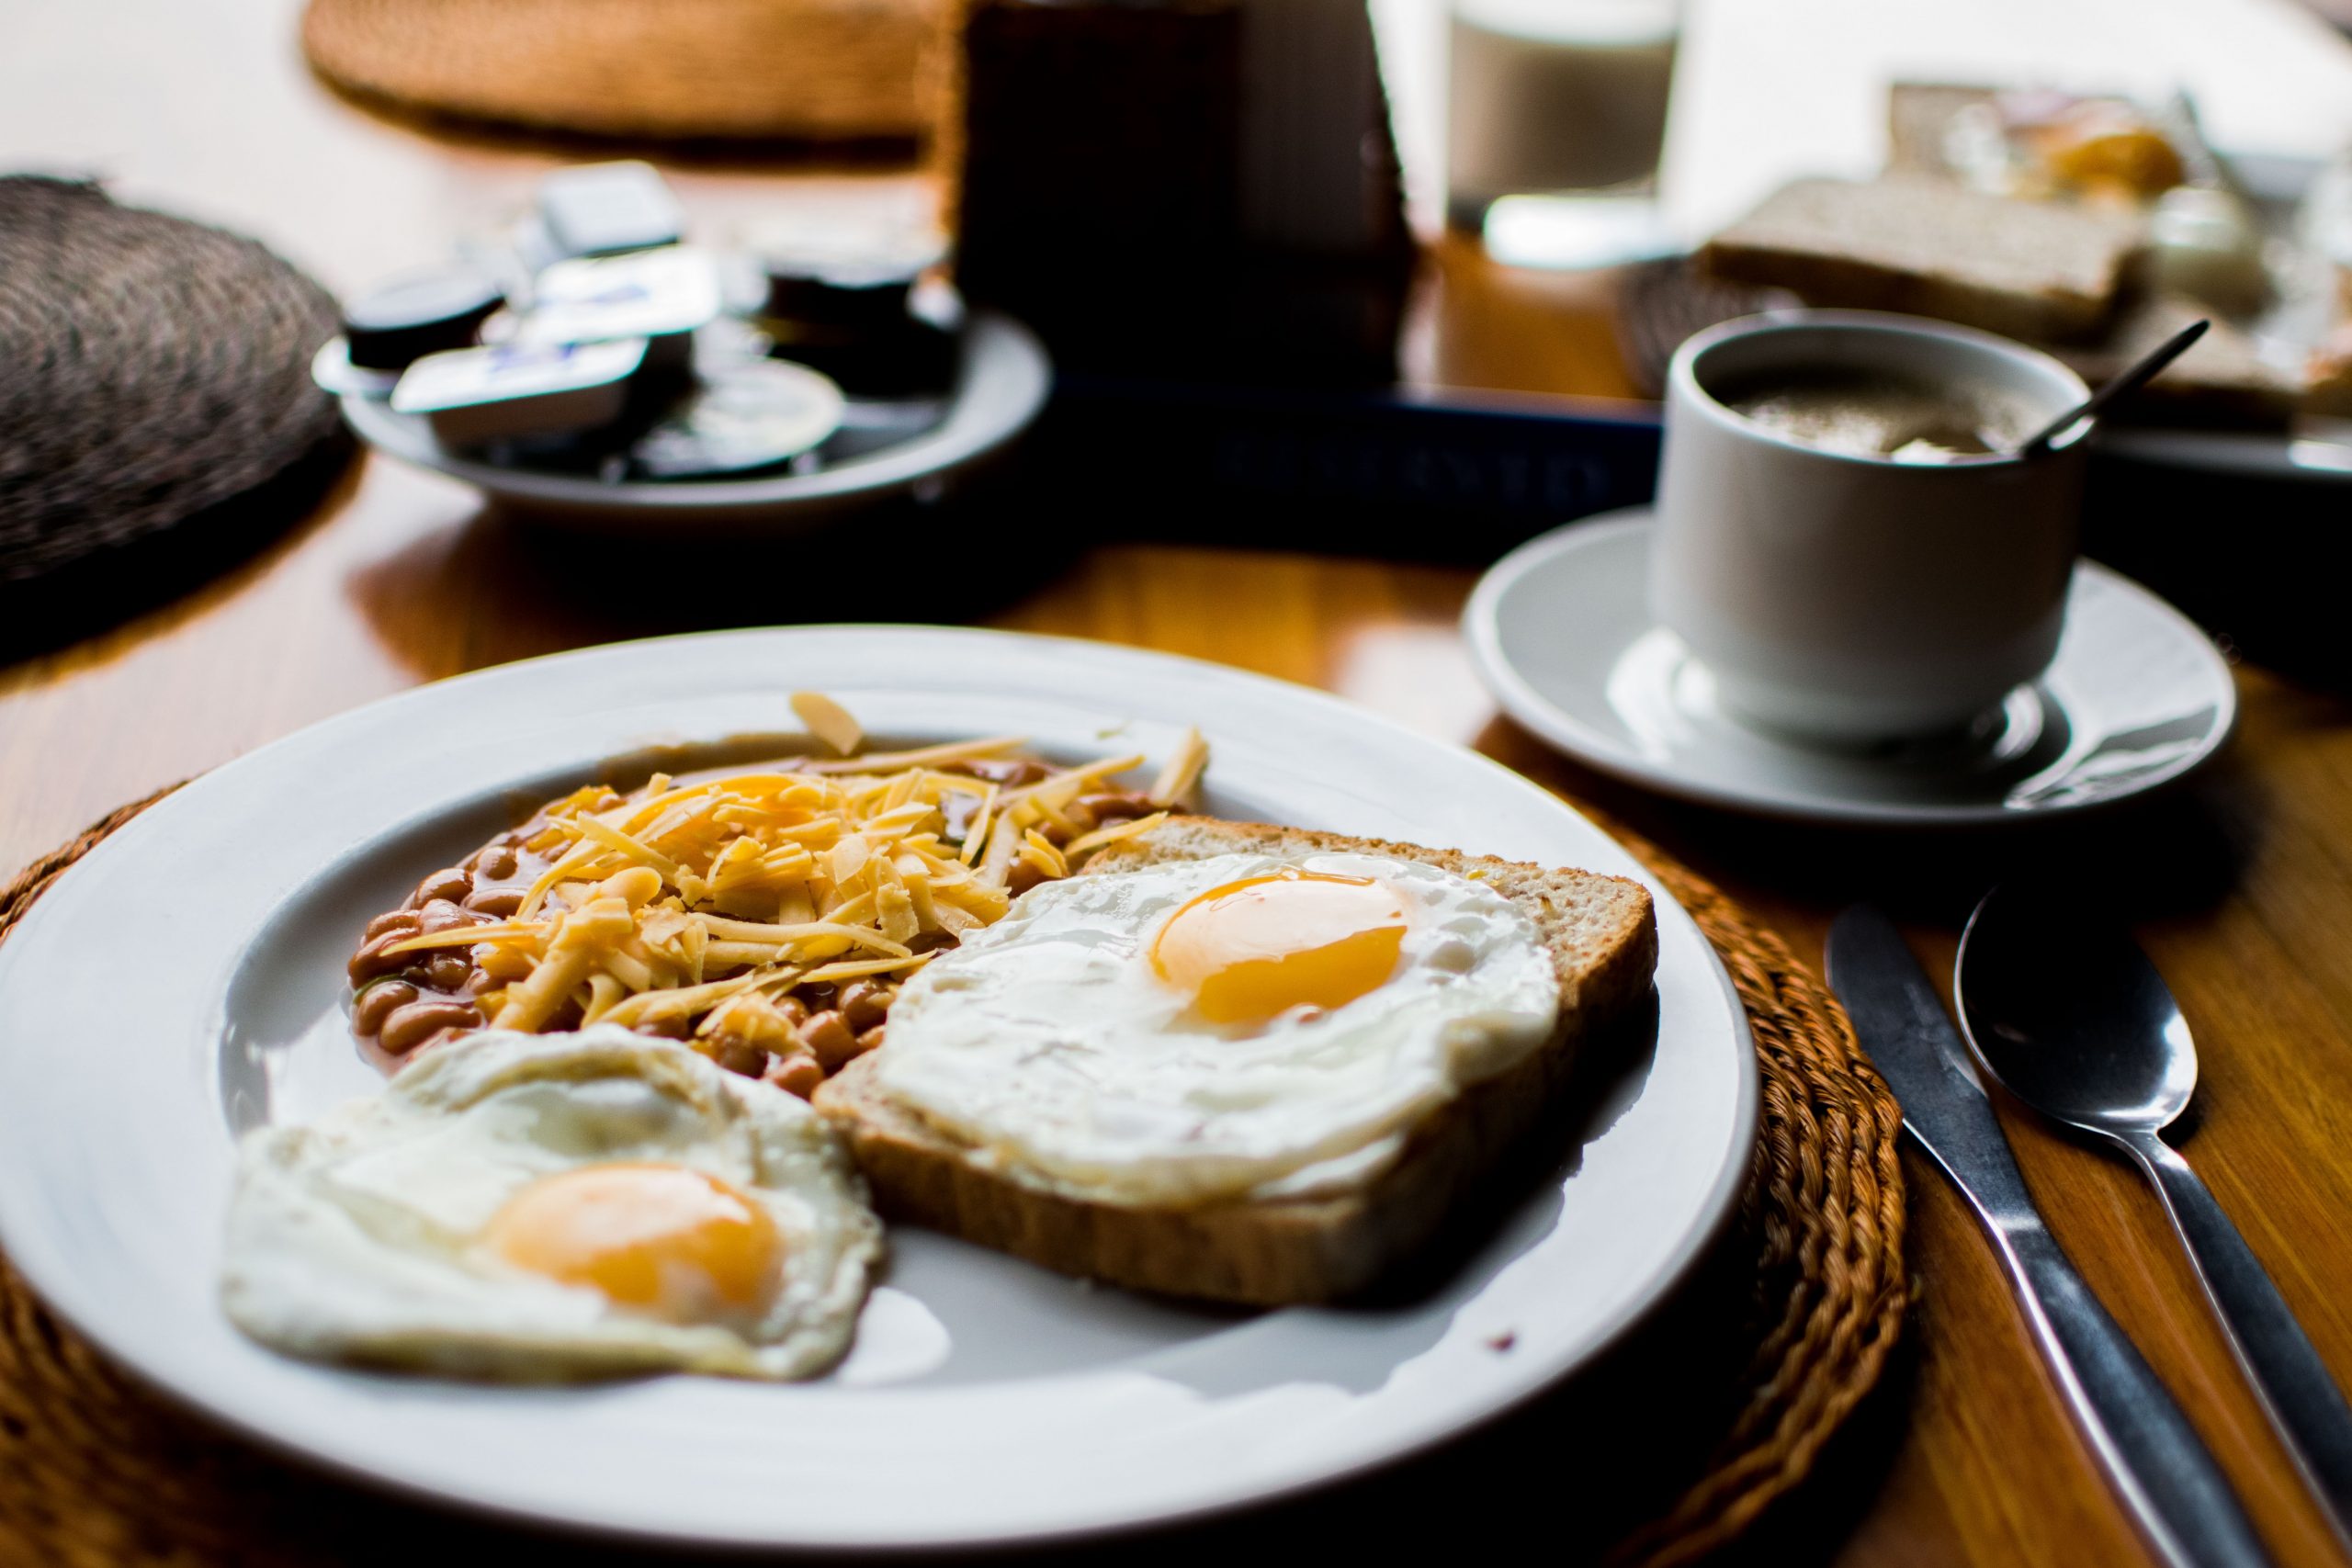 Breakfast_platter_eggs_toast_hashbrowns